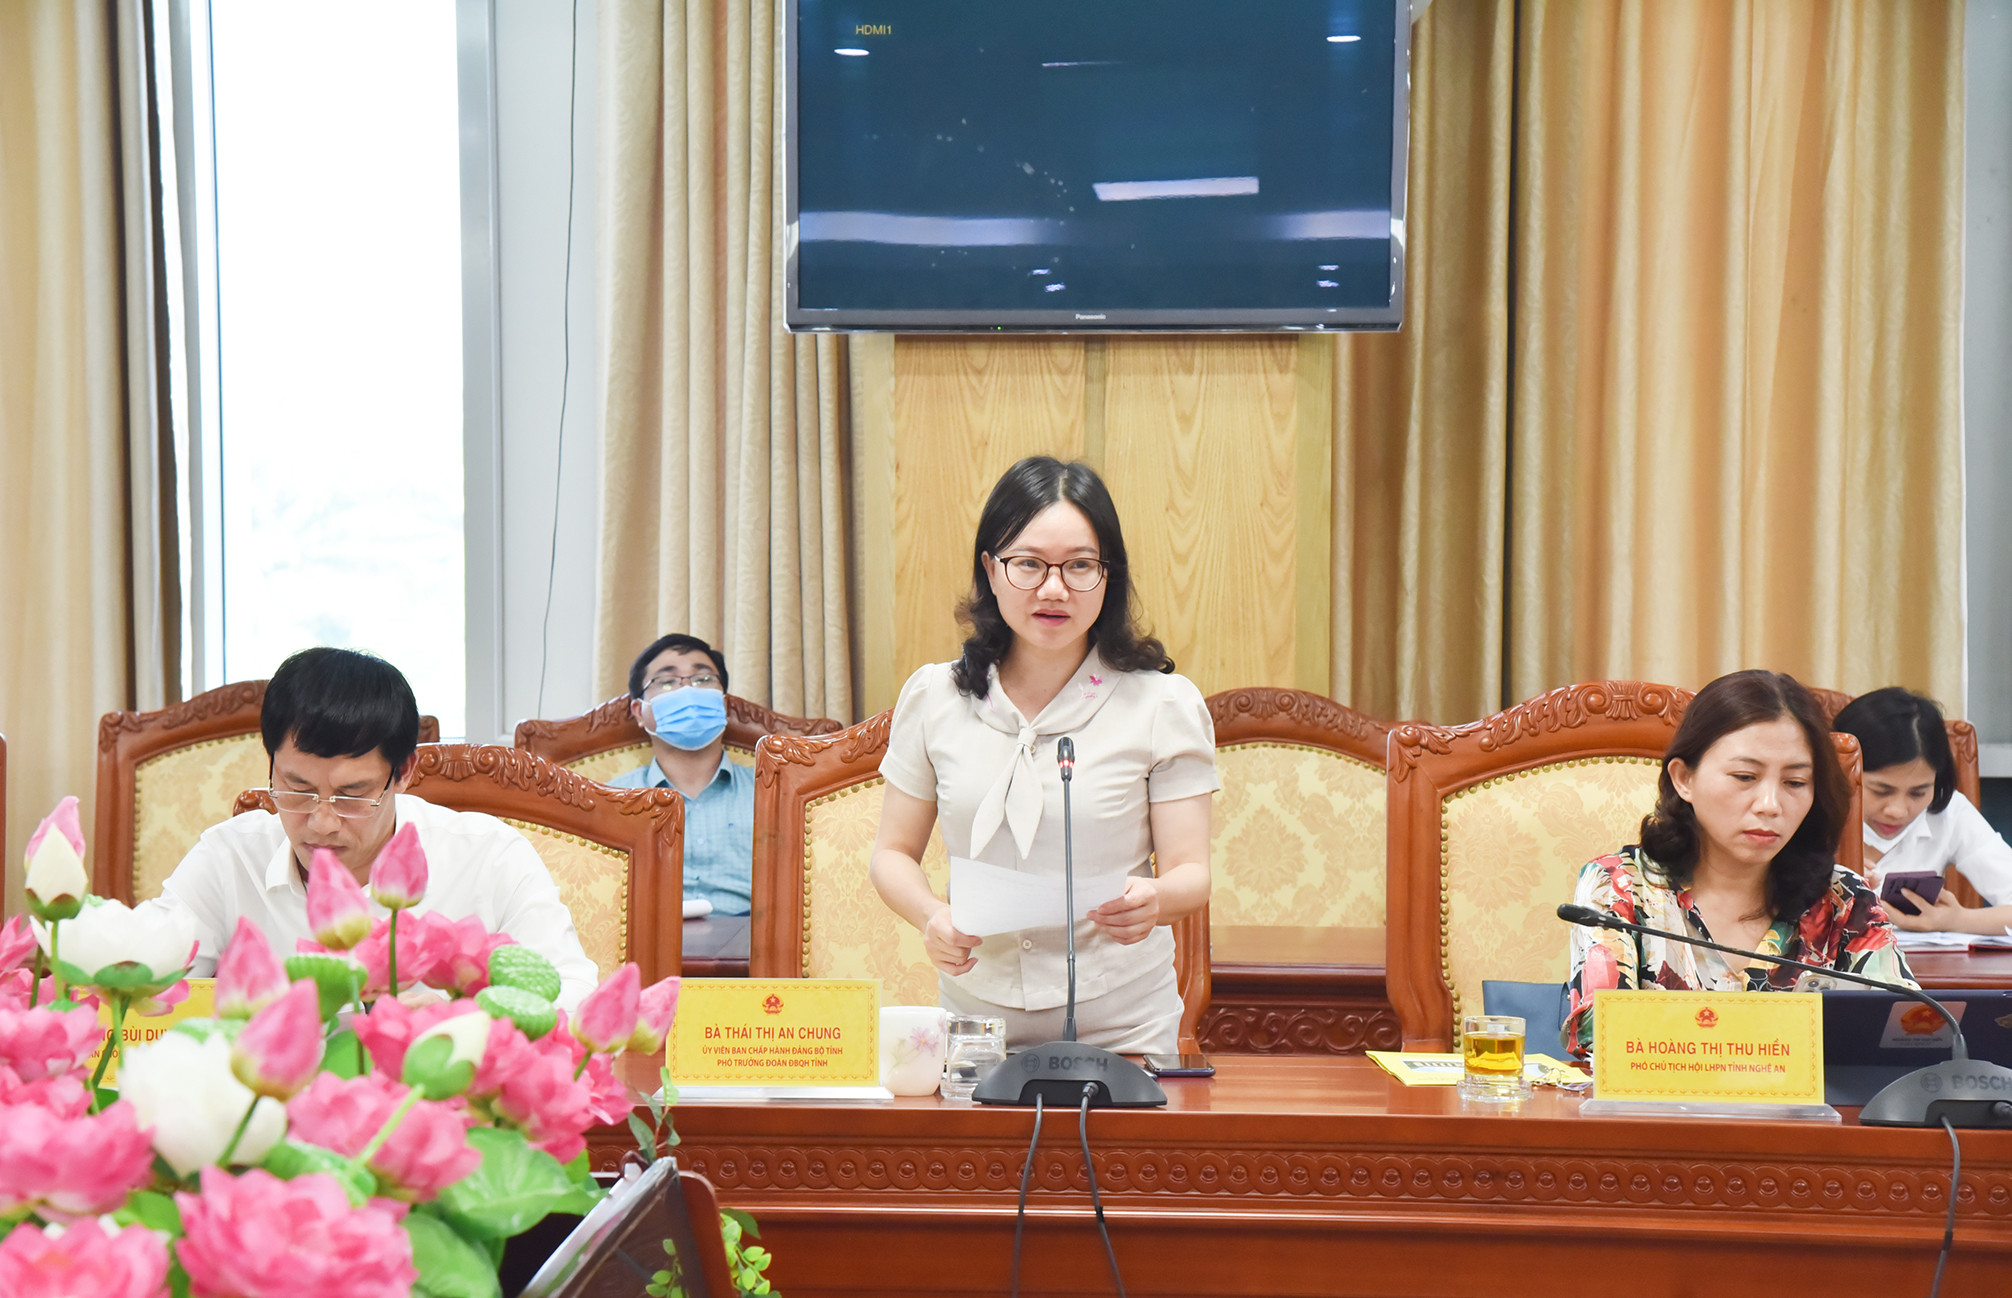 Phó Trưởng Đoàn ĐBQH tỉnh Thái Thị An Chung kết luận cuộc làm việc. Ảnh: Thanh Lê